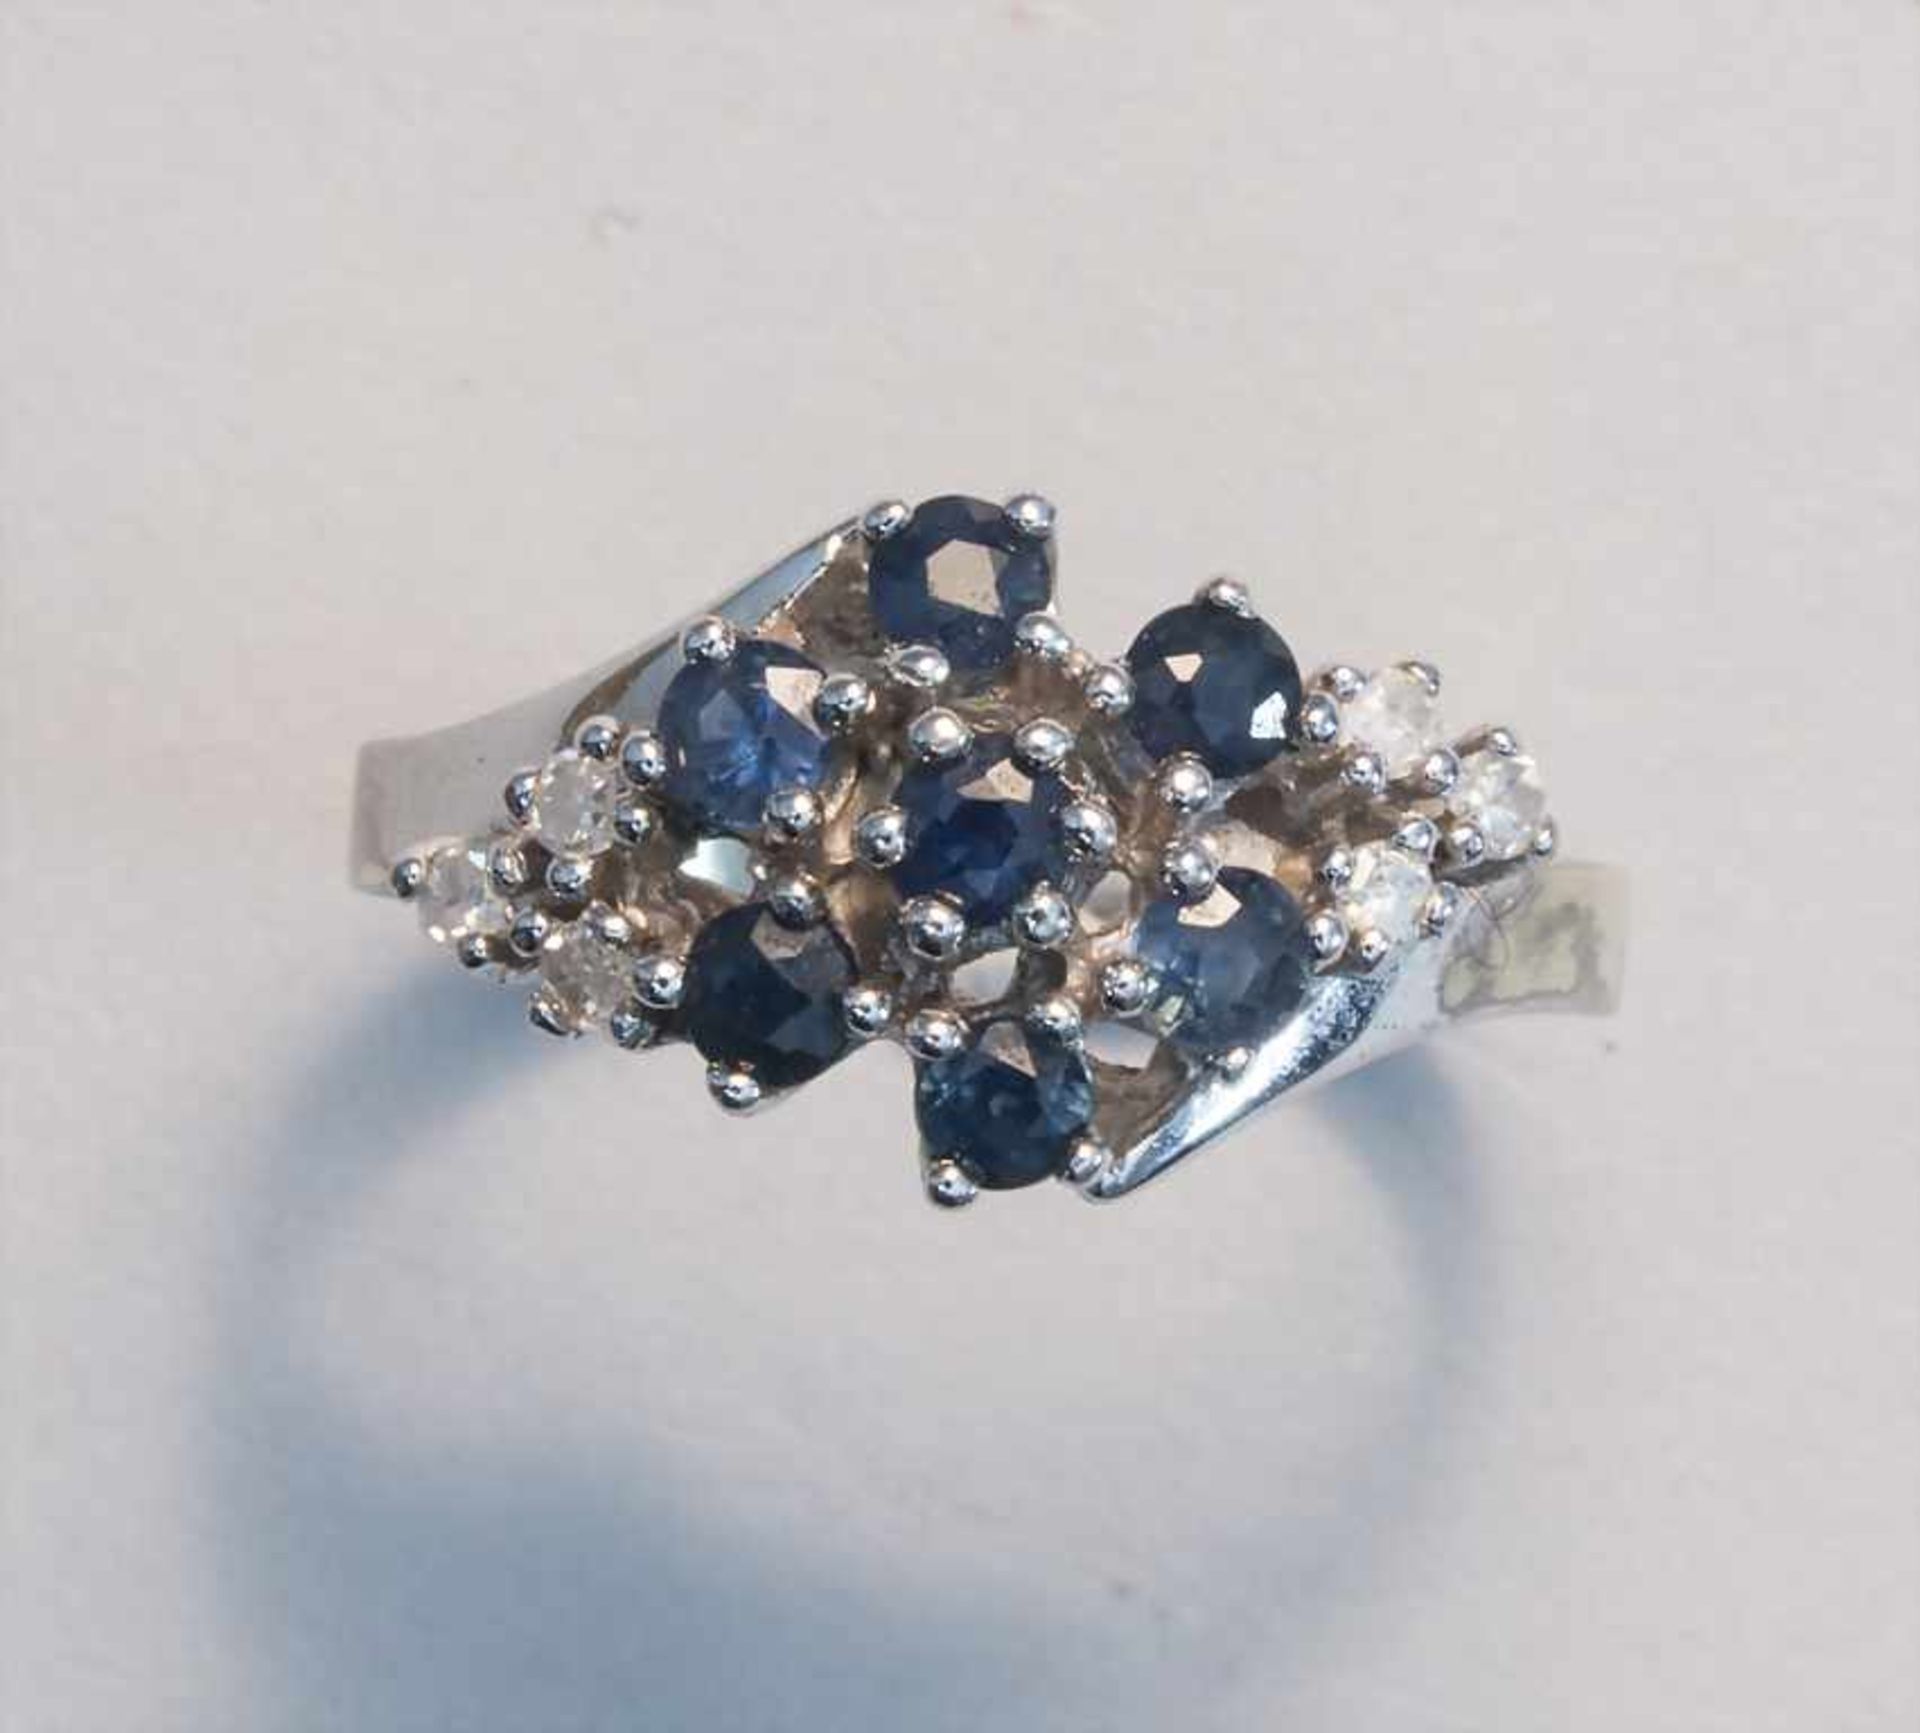 Damenring mit Diamanten und Saphiren / A ladies ring with diamonds and sapphires